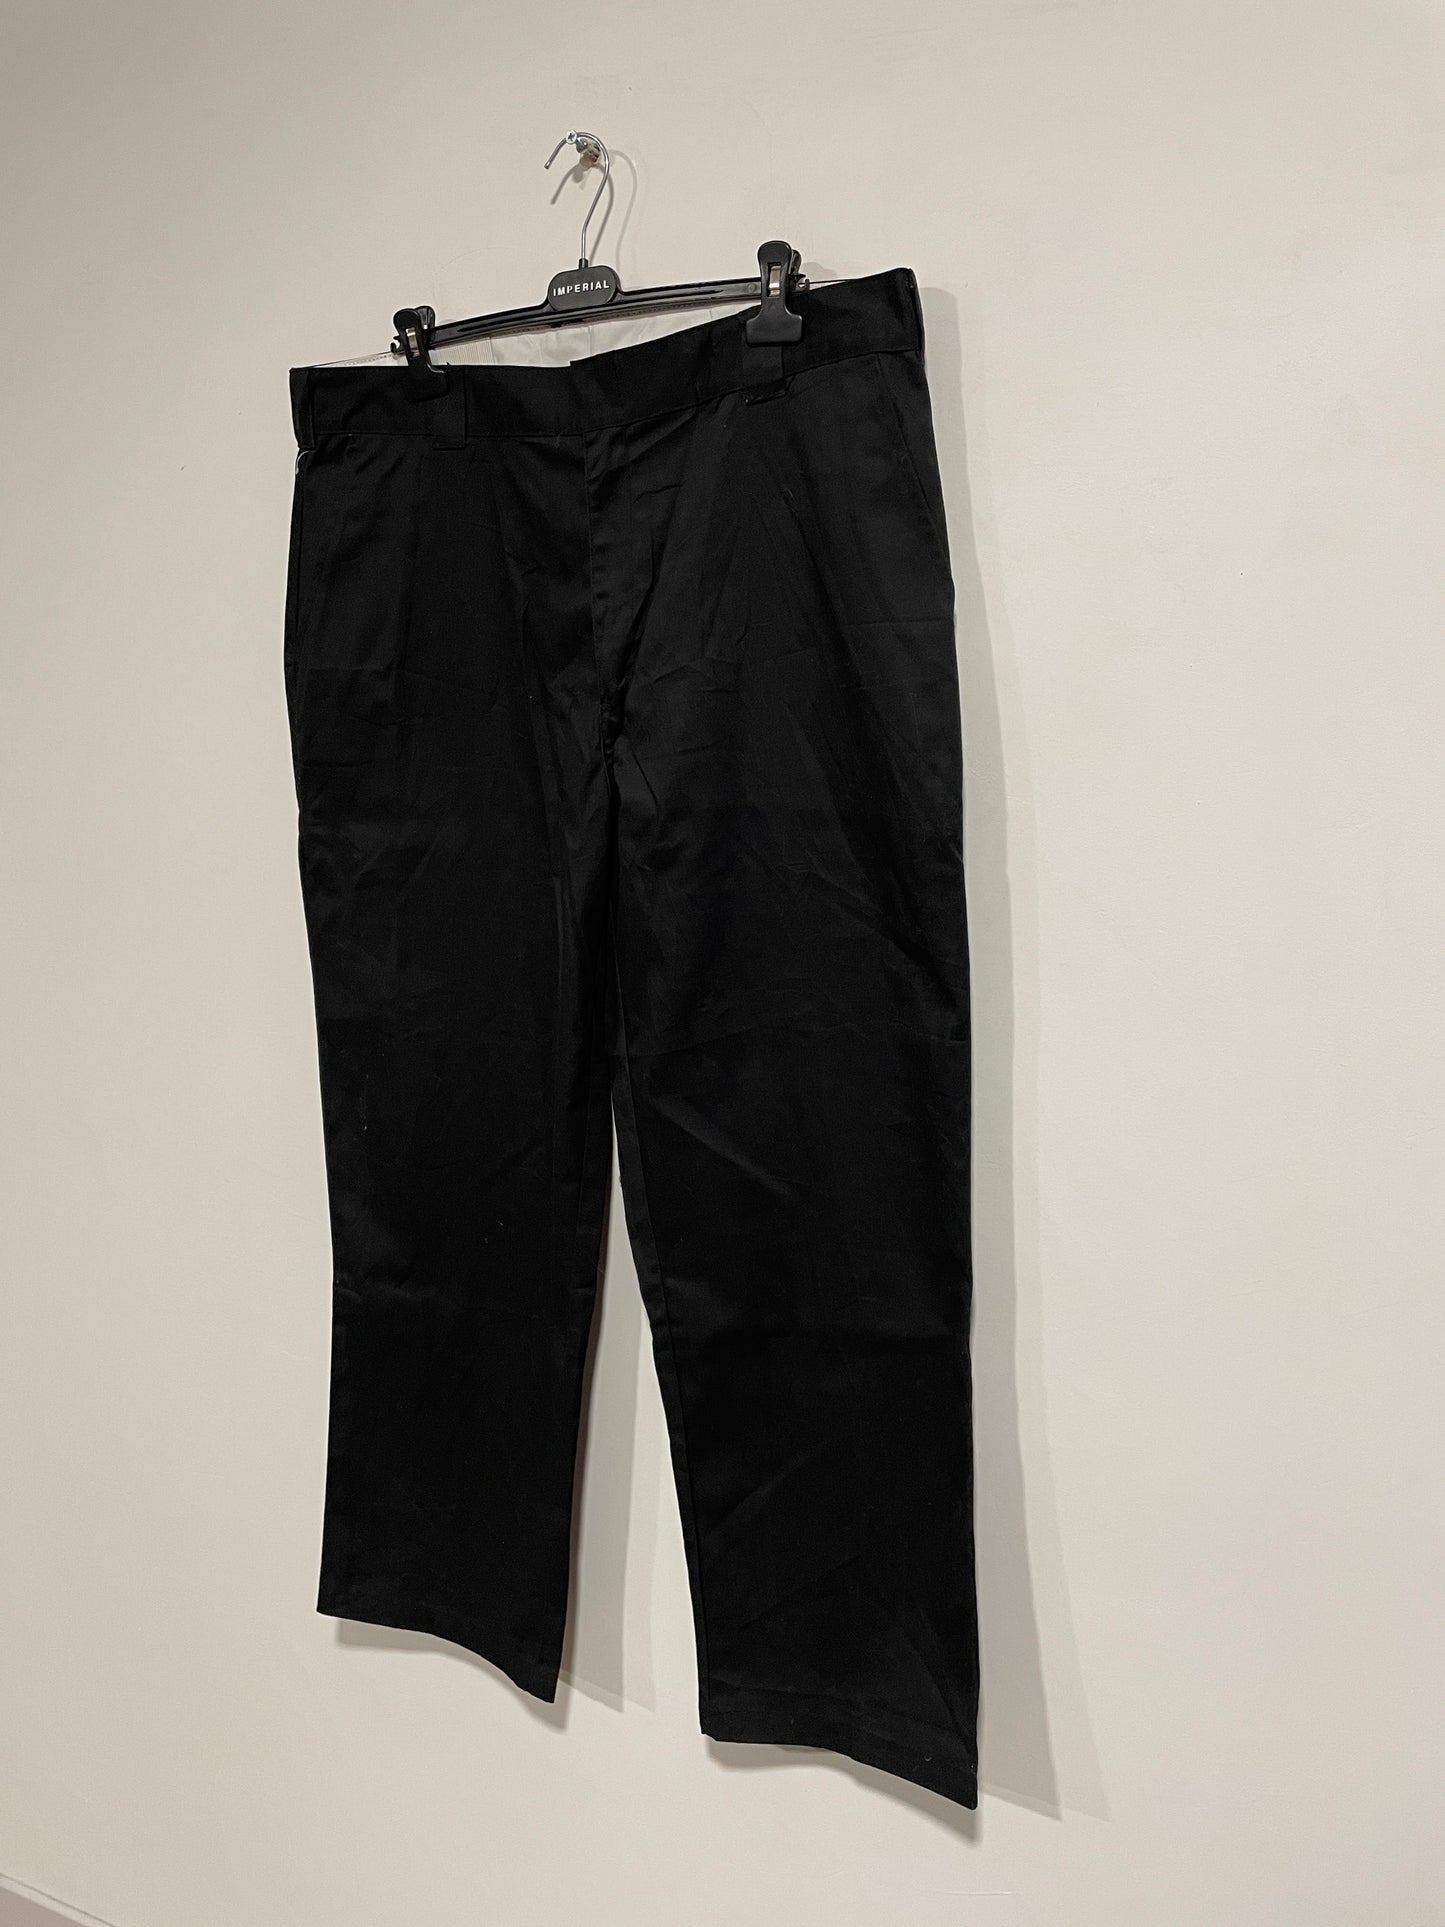 Pantalone Dickies nuovo con cartellino (B202)